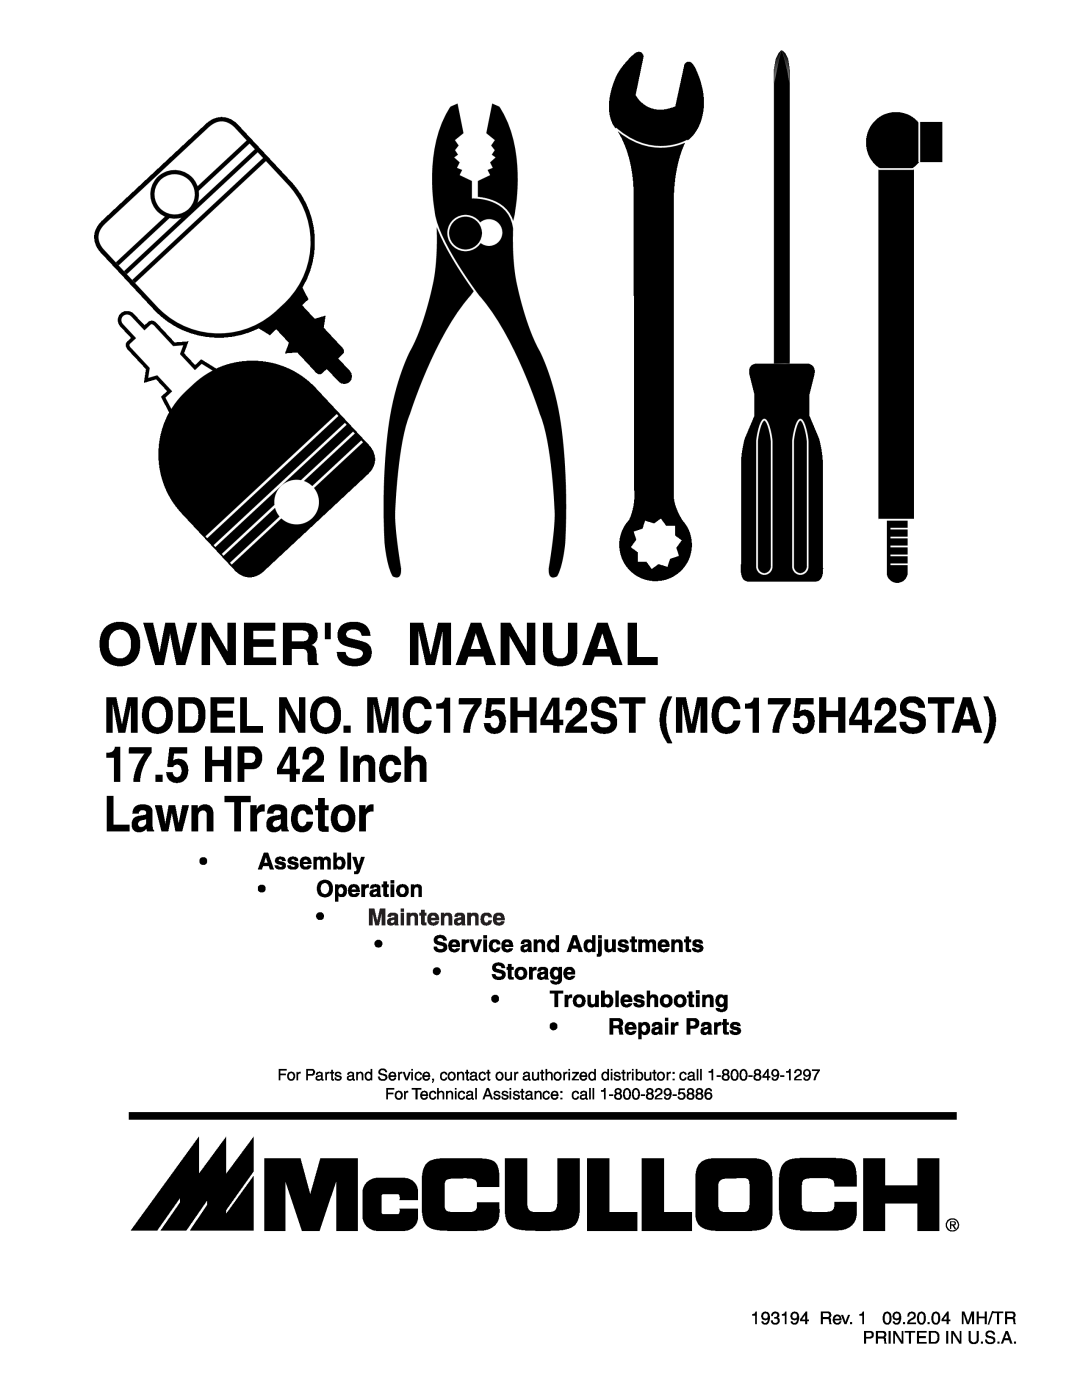 McCulloch manual 17.5 HP 42 Inch Lawn Tractor, MODEL NO. MC175H42ST MC175H42STA 